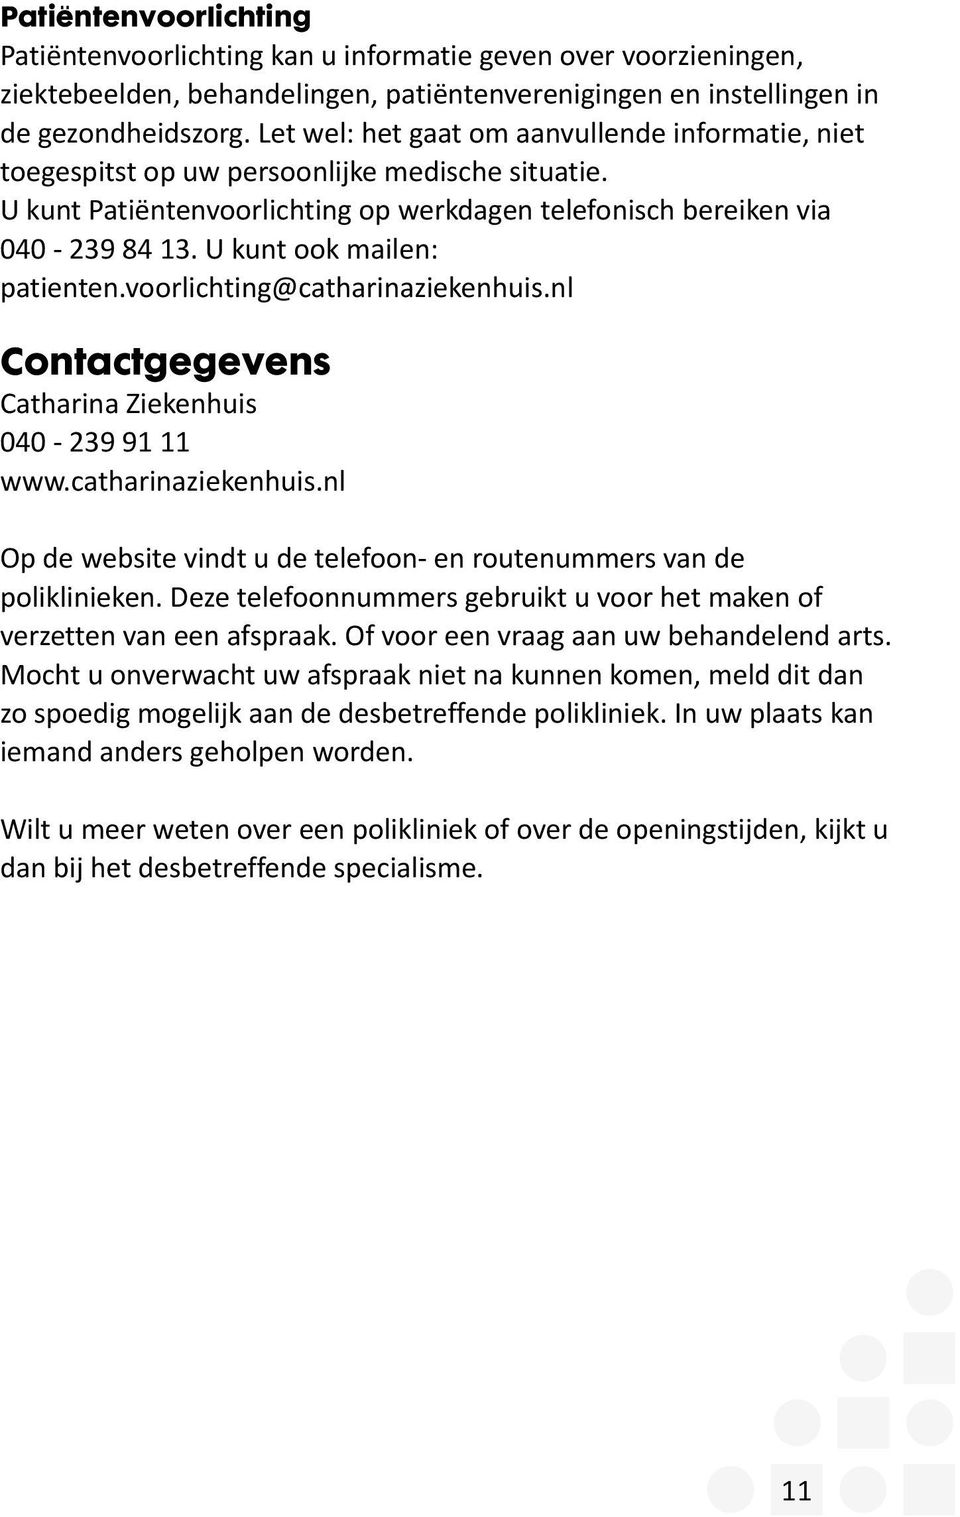 U kunt ook mailen: patienten.voorlichting@catharinaziekenhuis.nl Contactgegevens Catharina Ziekenhuis 040-239 91 11 www.catharinaziekenhuis.nl Op de website vindt u de telefoon- en routenummers van de poliklinieken.